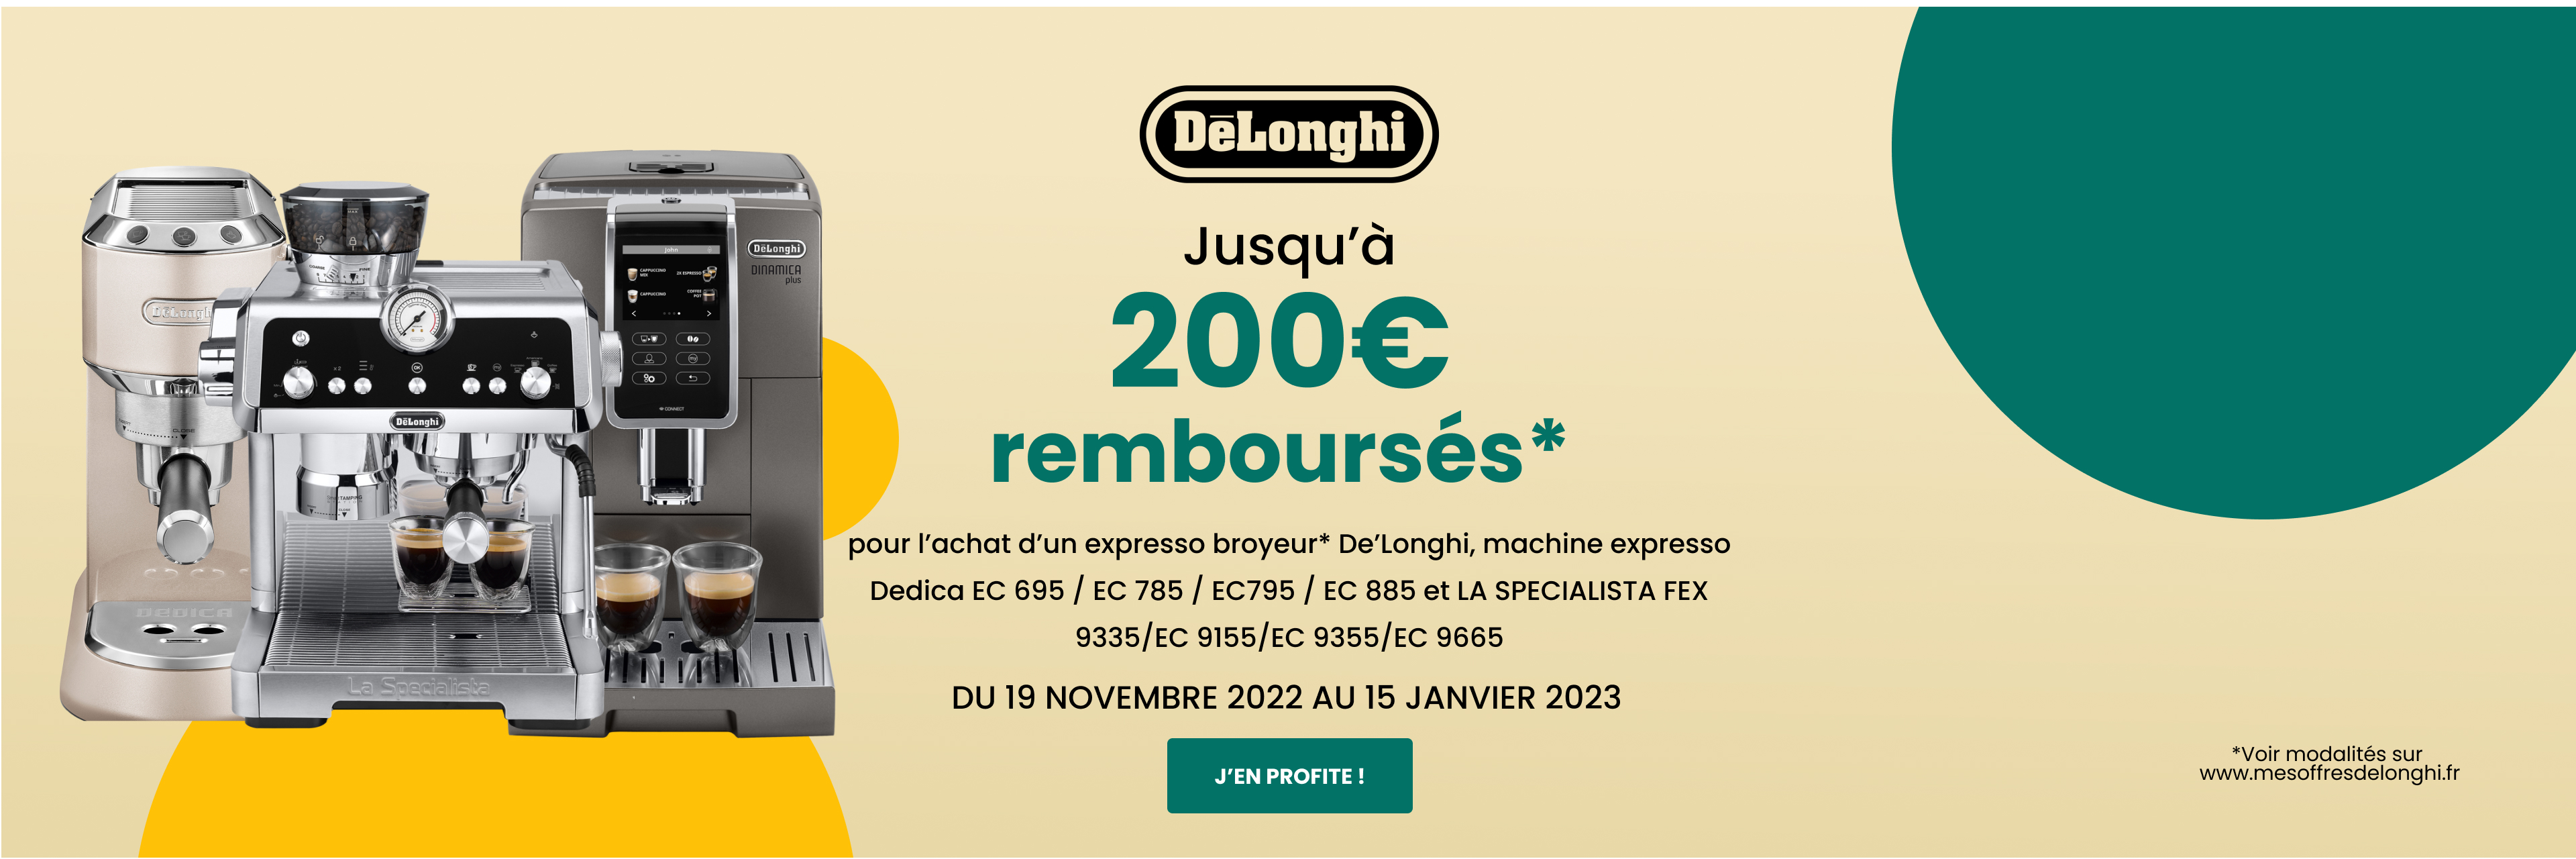 Jusqu’à 200€ remboursés* pour l’achat d’un expresso broyeur* De’Longhi, machine expresso Dedica et La Specialista